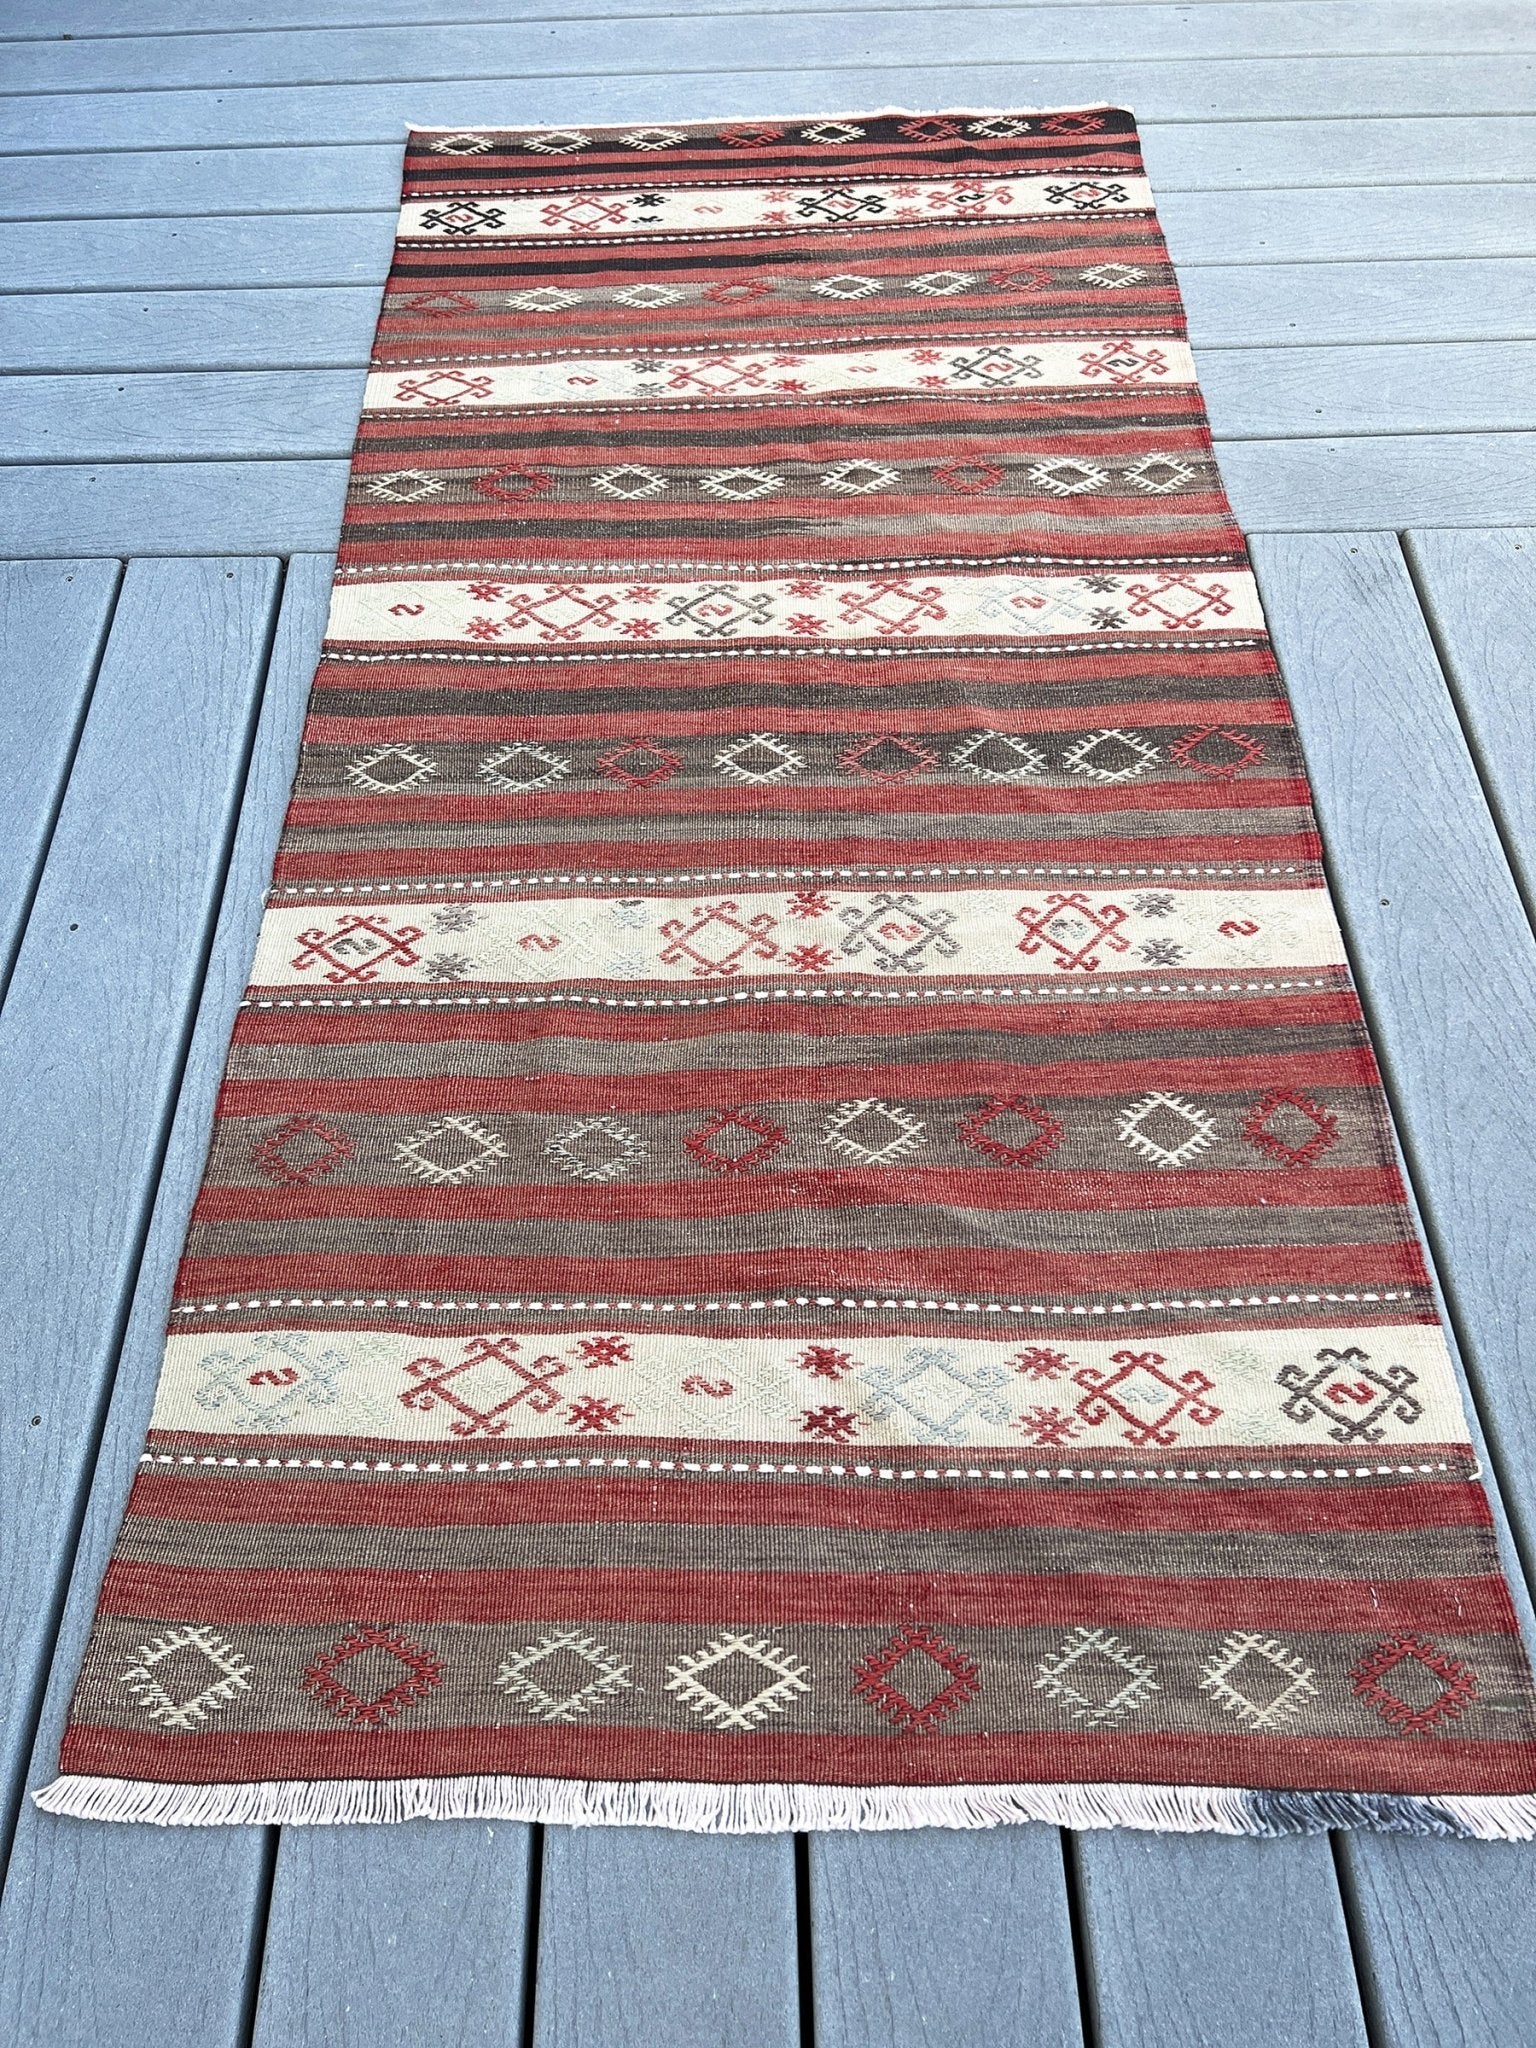 Sivas wool handmade vintage turkish runner kilim rug shop san francisco bay area. Oriental rug store. Buy rug online